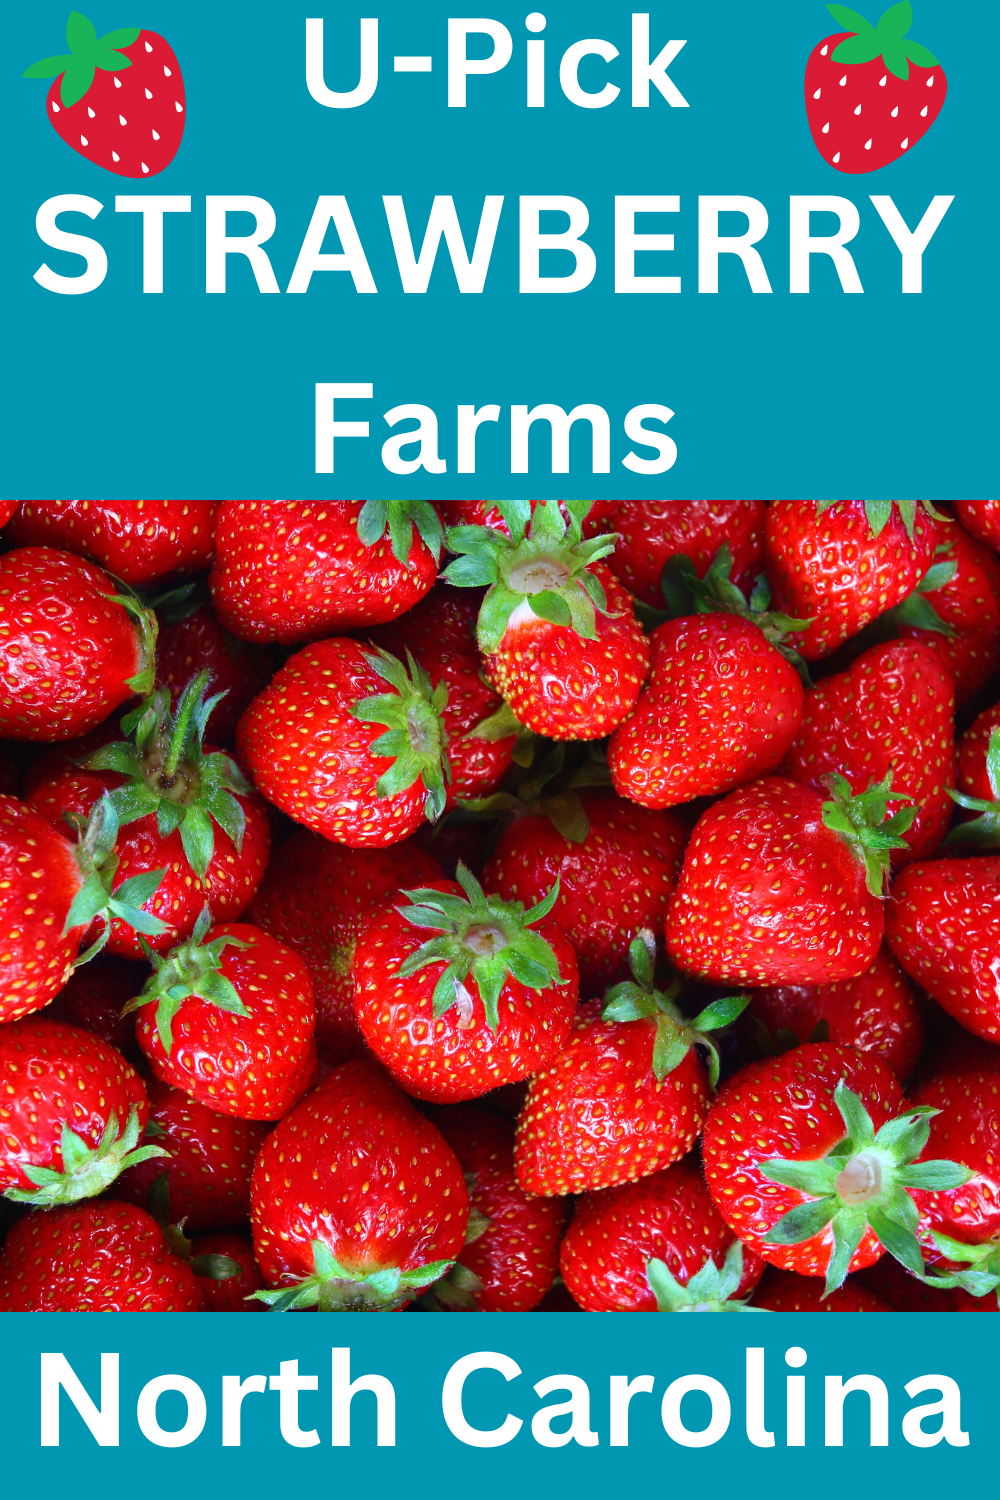 U-Pick Strawberry Farms north carolina